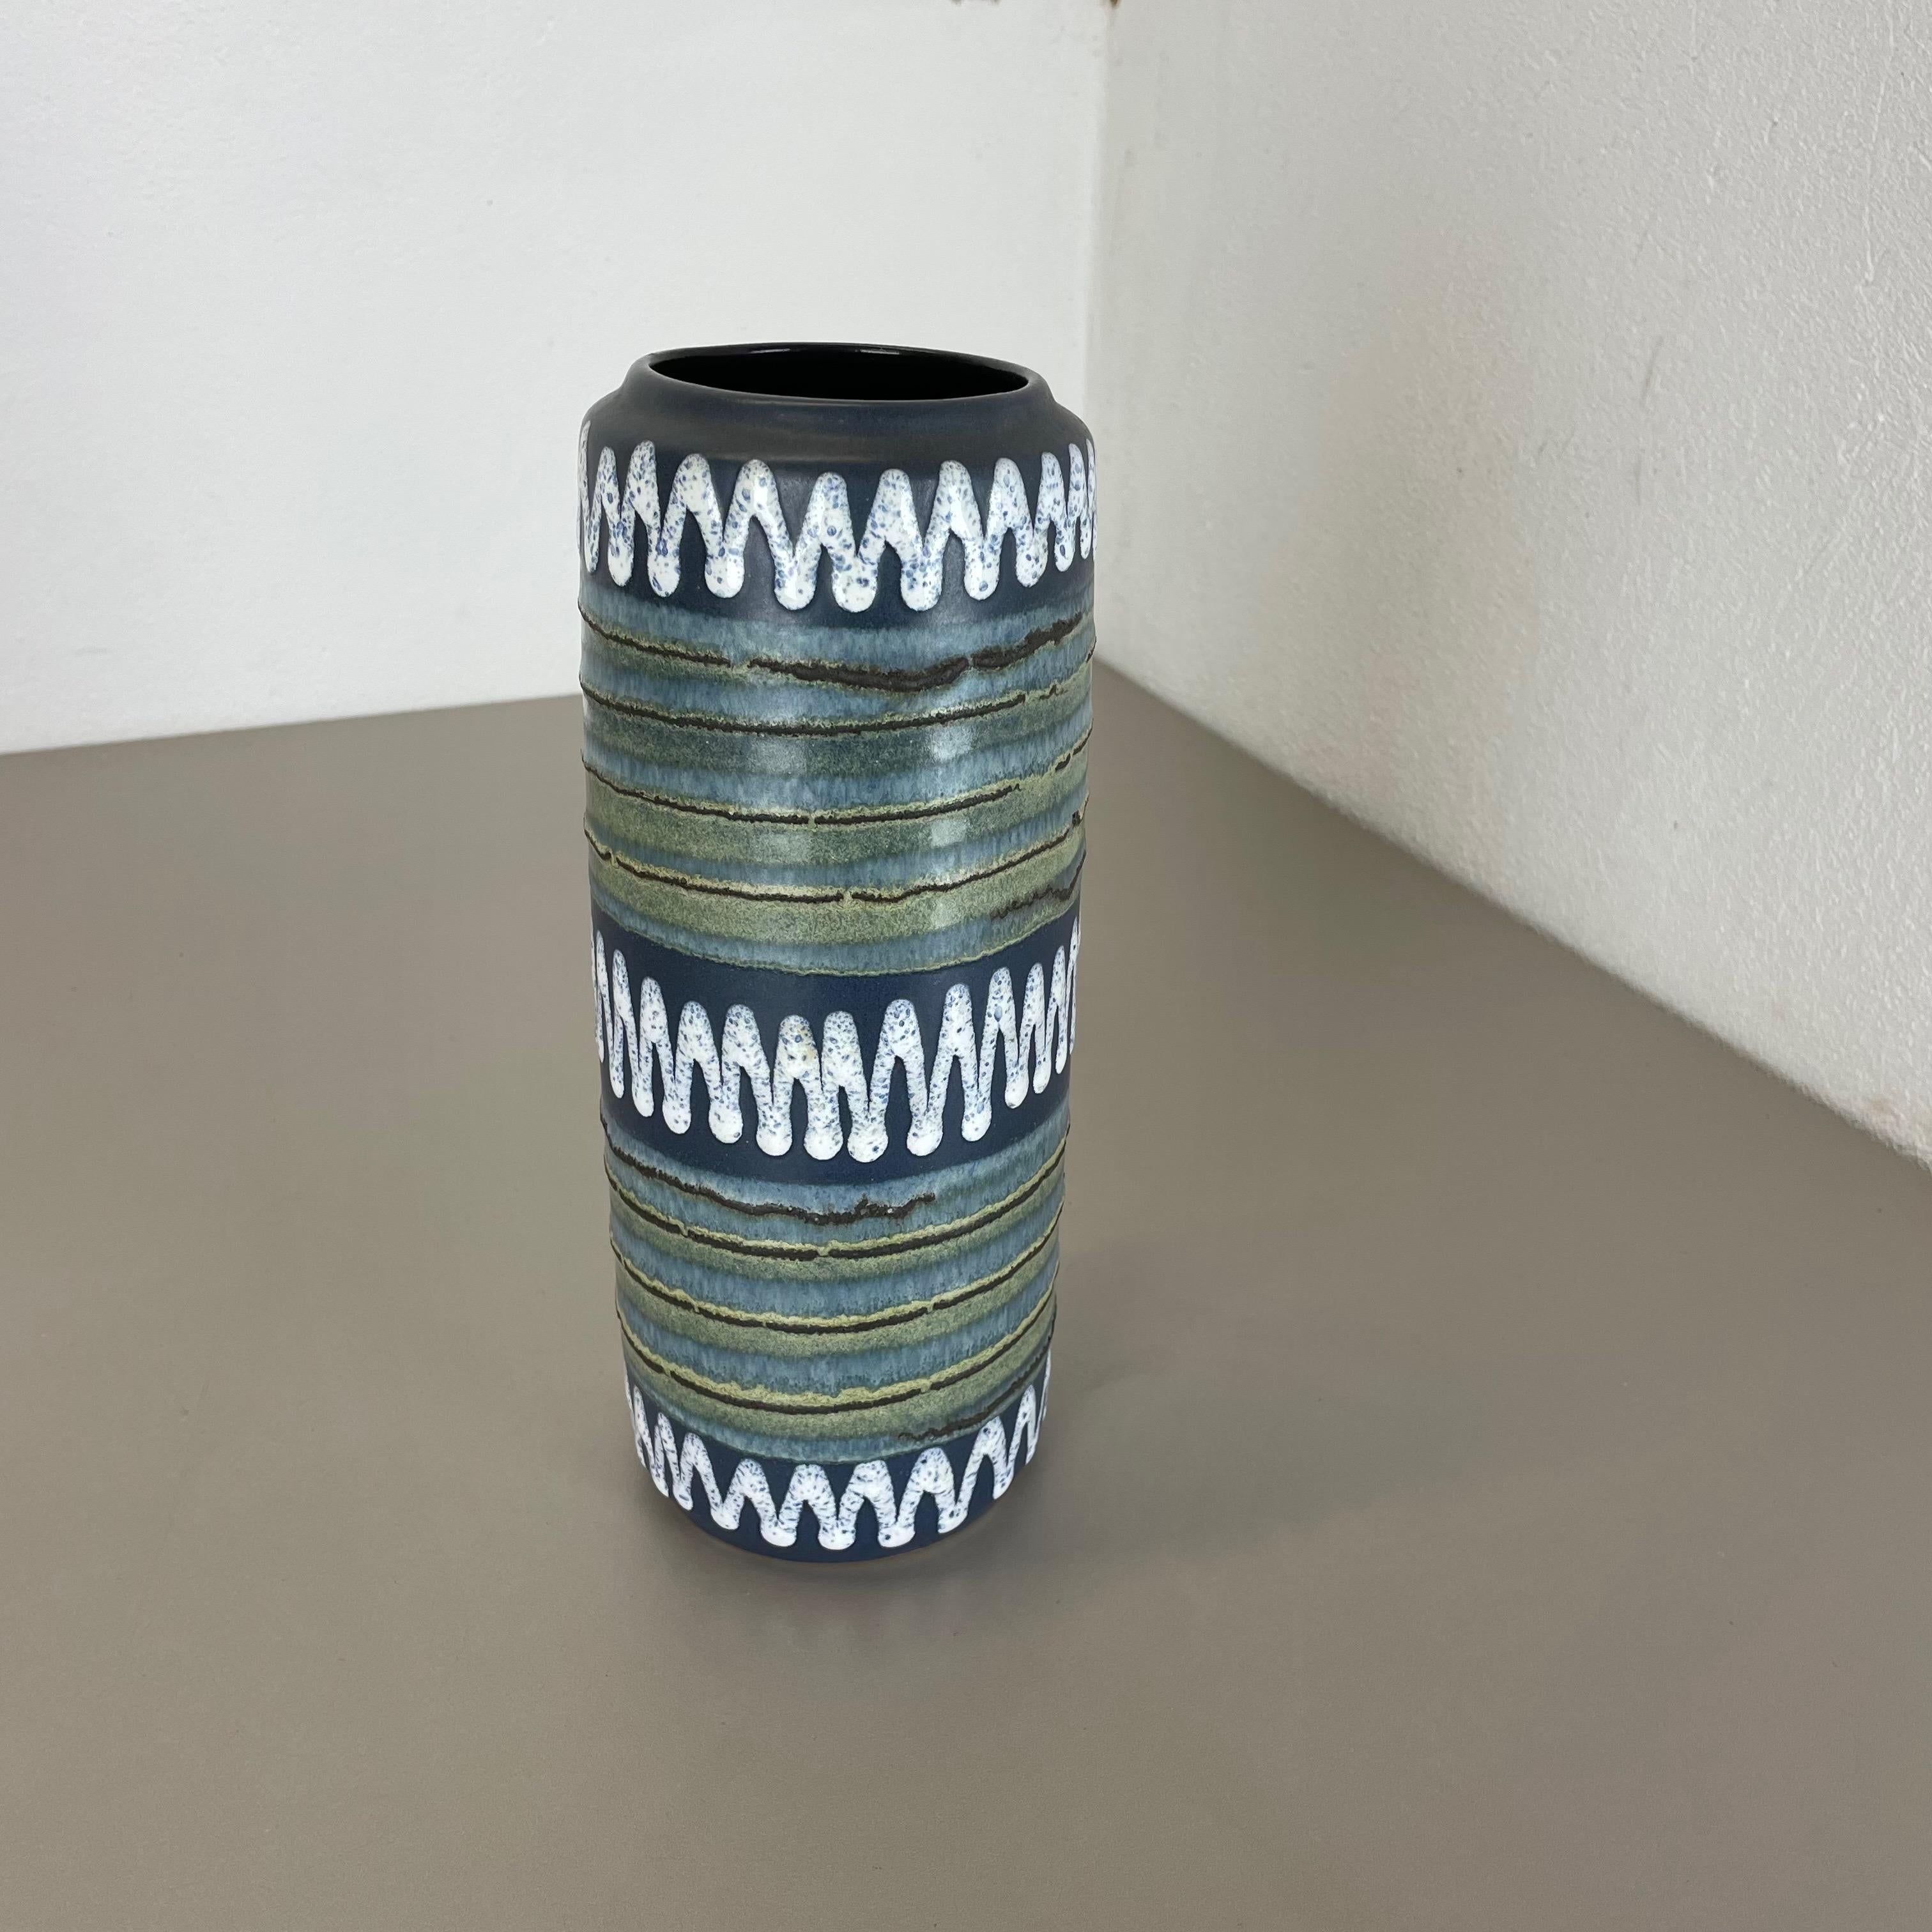 Article :

Vase d'art en lave grasse, GLAÇAGE PROTOTYPE


Producteur :

Scheurich, Allemagne



Décennie :

1970s




Ce vase vintage original a été produit dans les années 1970 en Allemagne. Il est réalisé en poterie céramique en optique lave